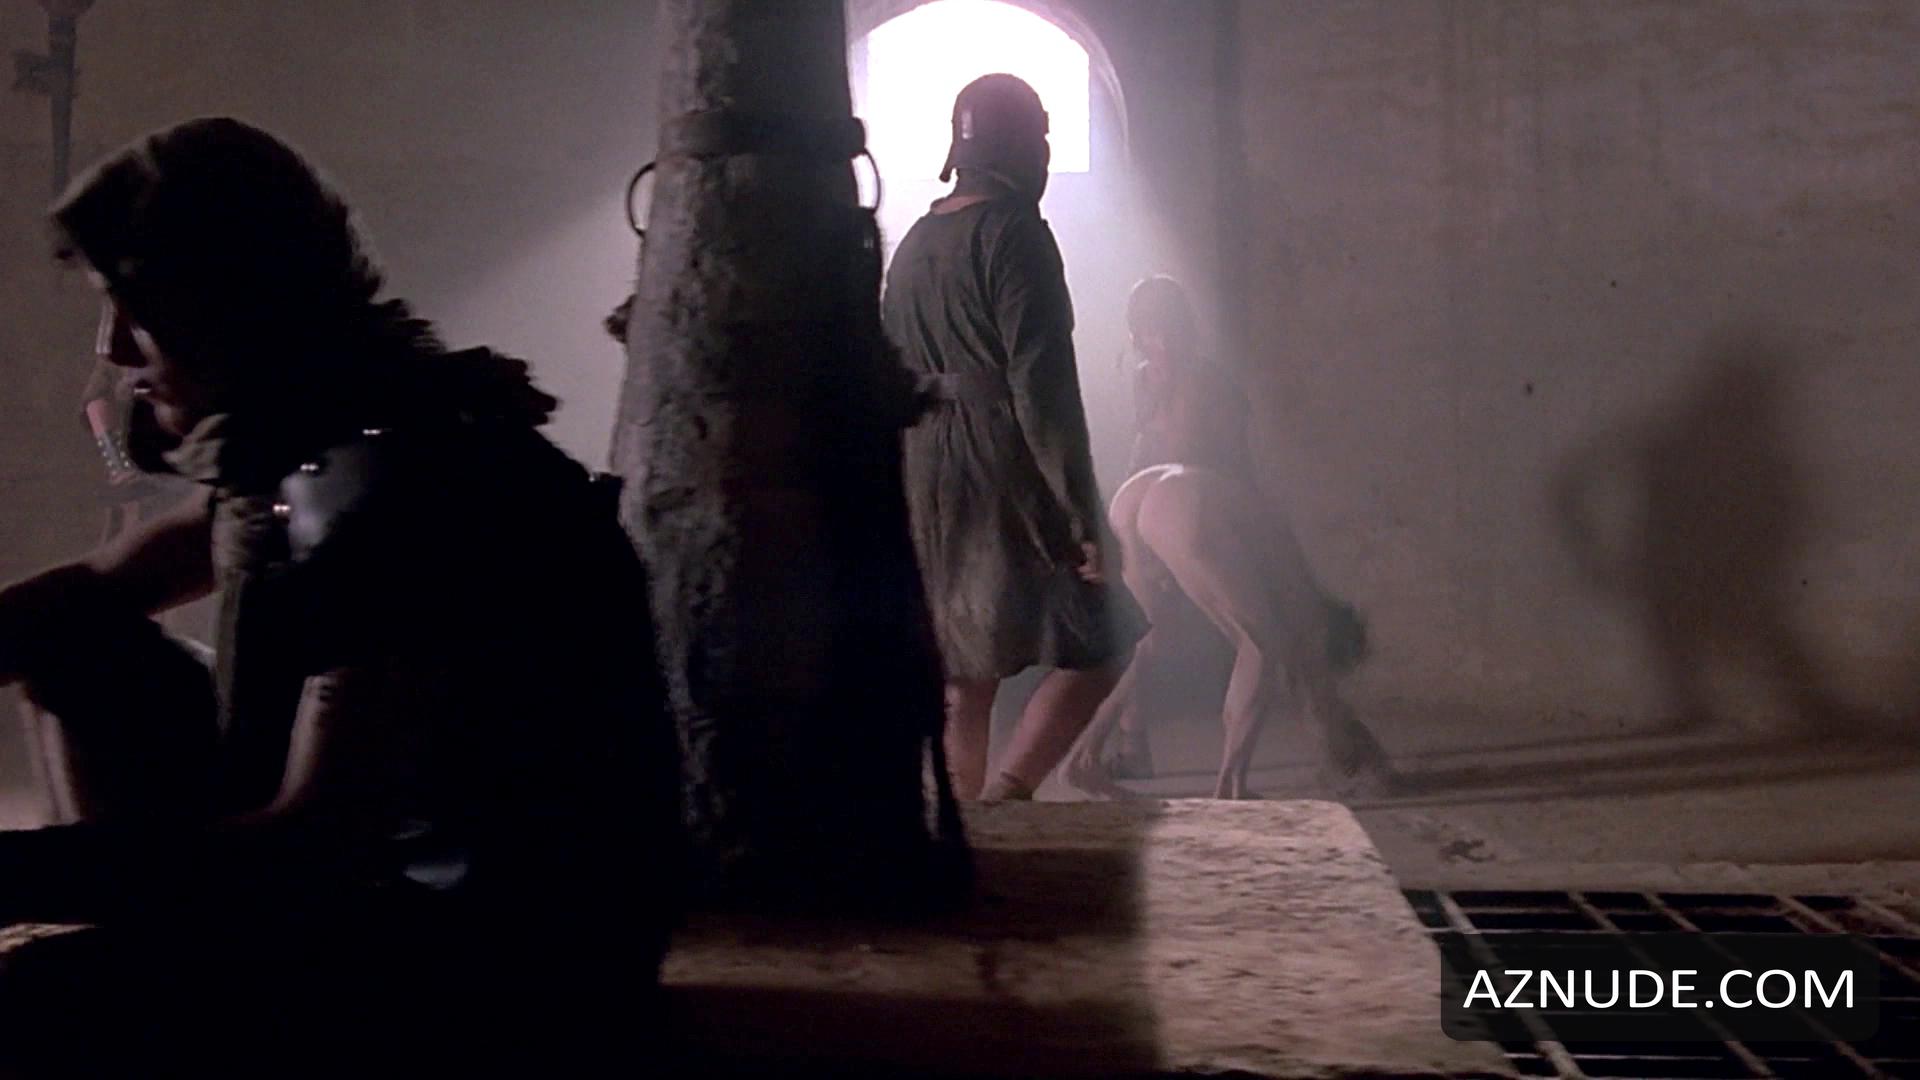 The Last Temptation Of Christ Nude Scenes Aznude Men